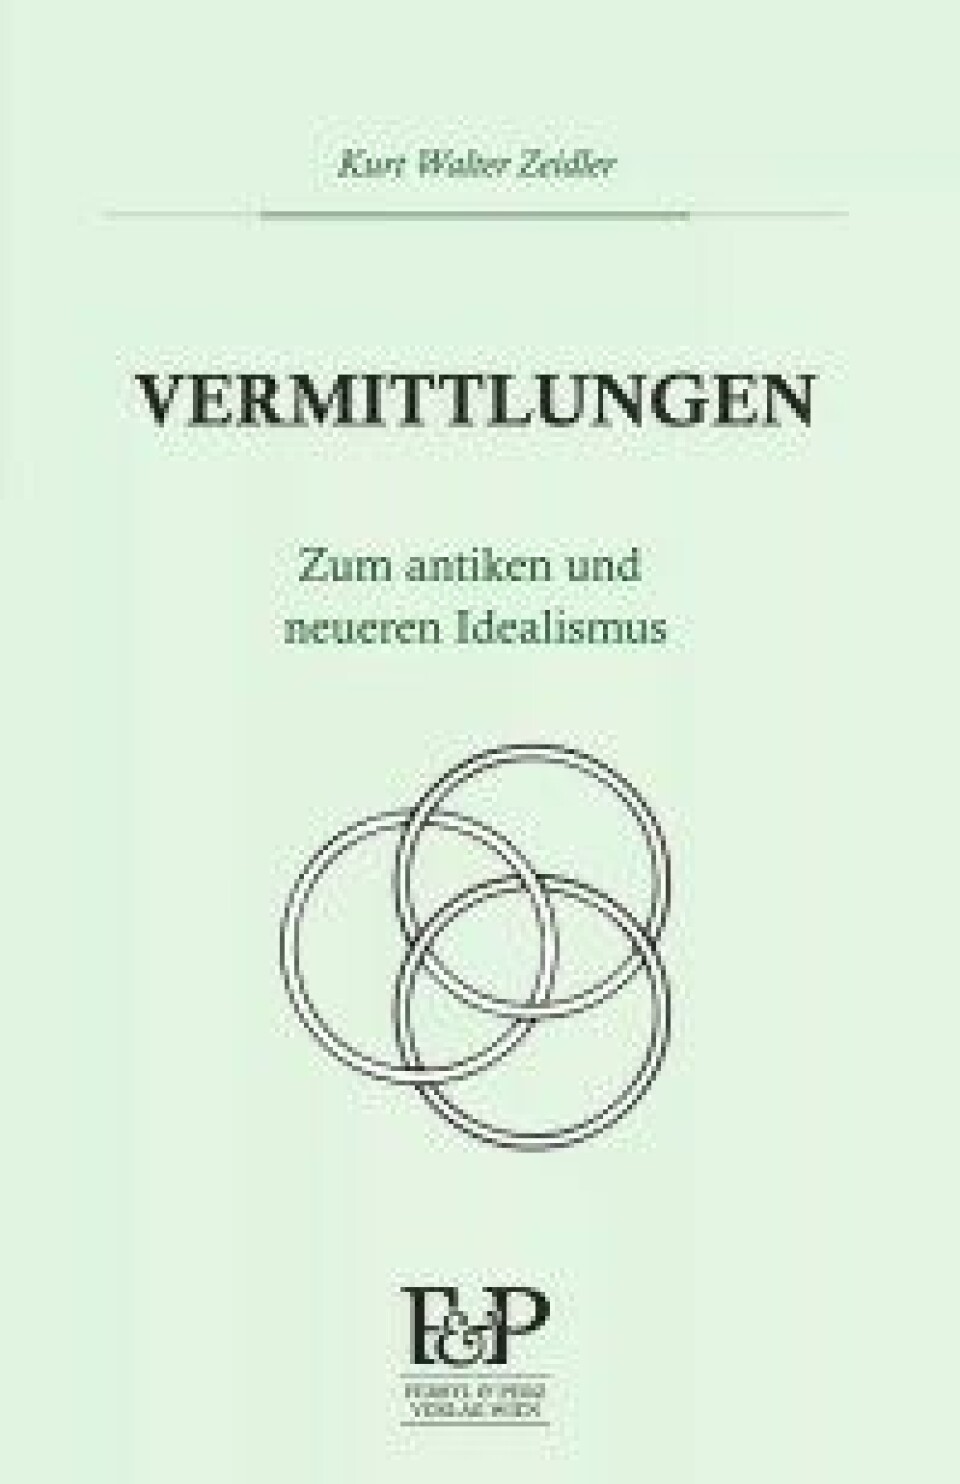 Vermittlungen. Zum antiken und neueren Idealismus av Kurt Walter Zeidler. Ferstl & Perz, 2016.